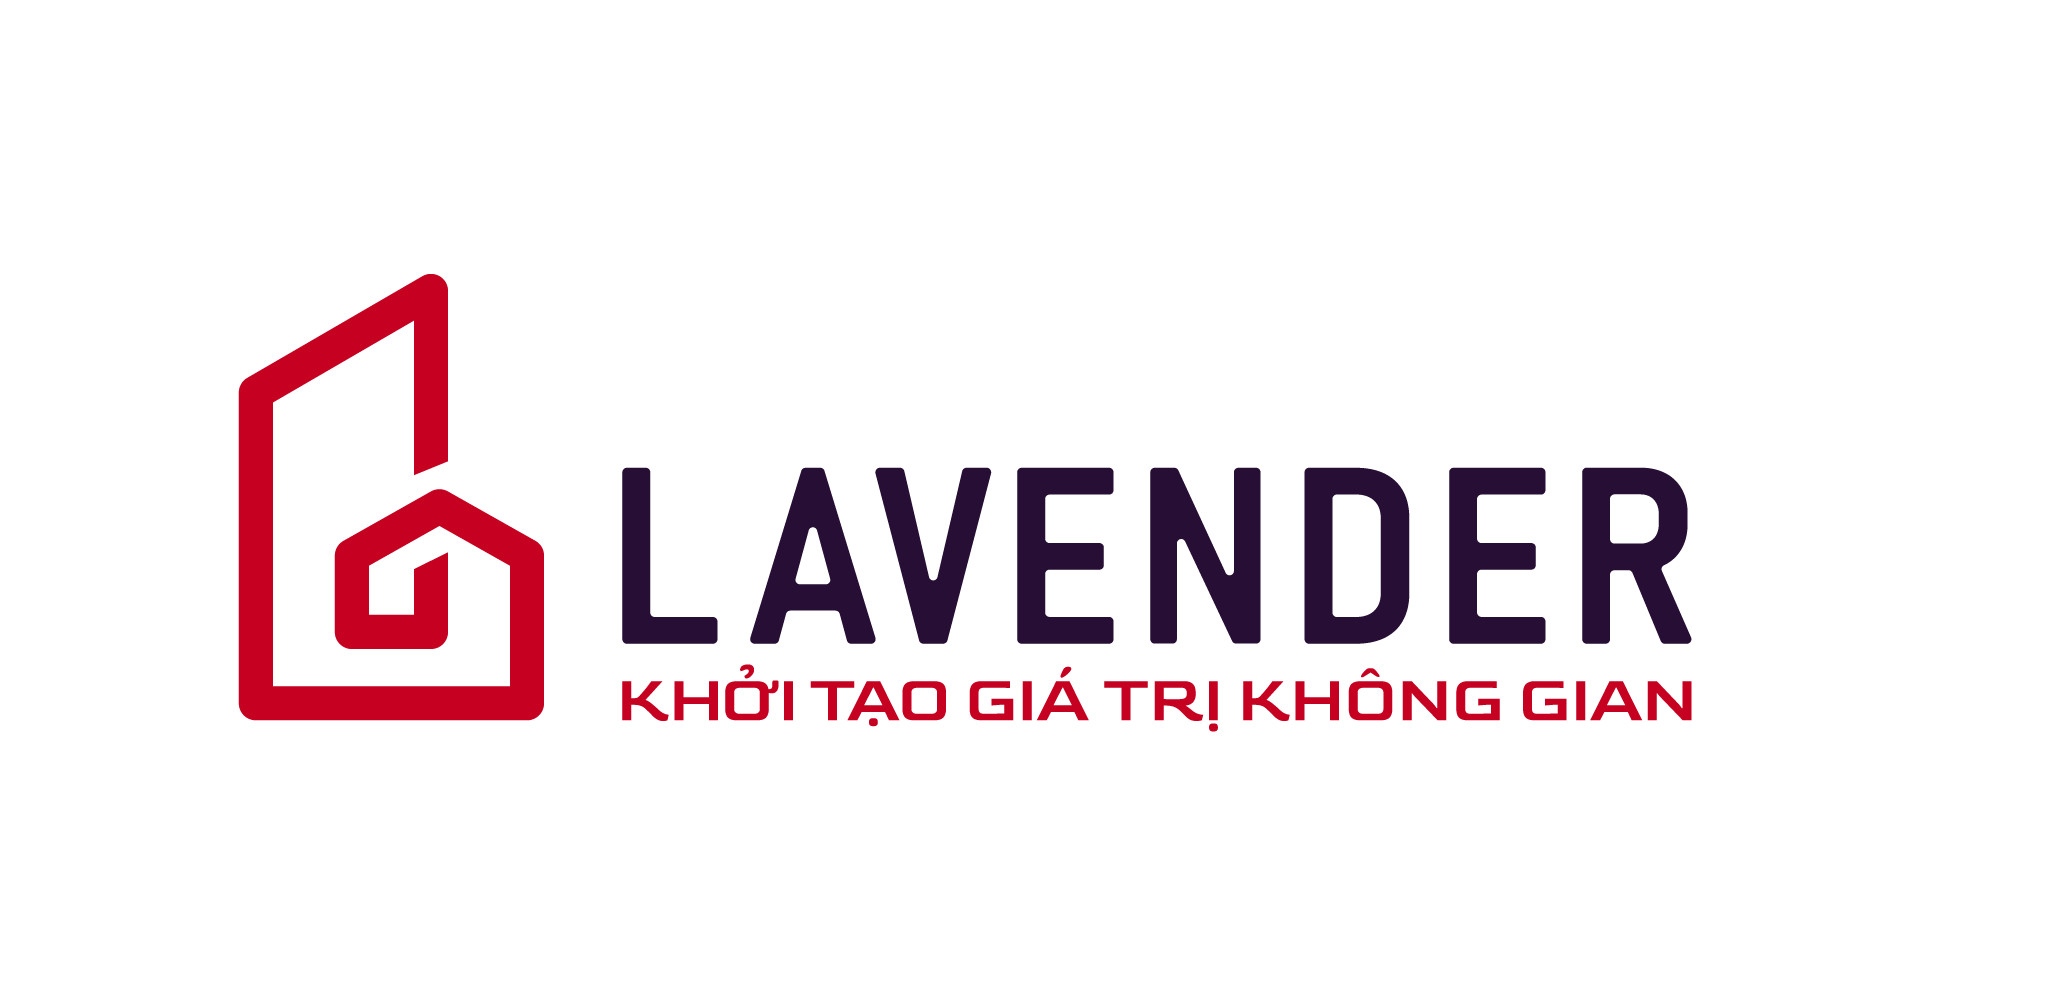 logo-noi-that-lavender